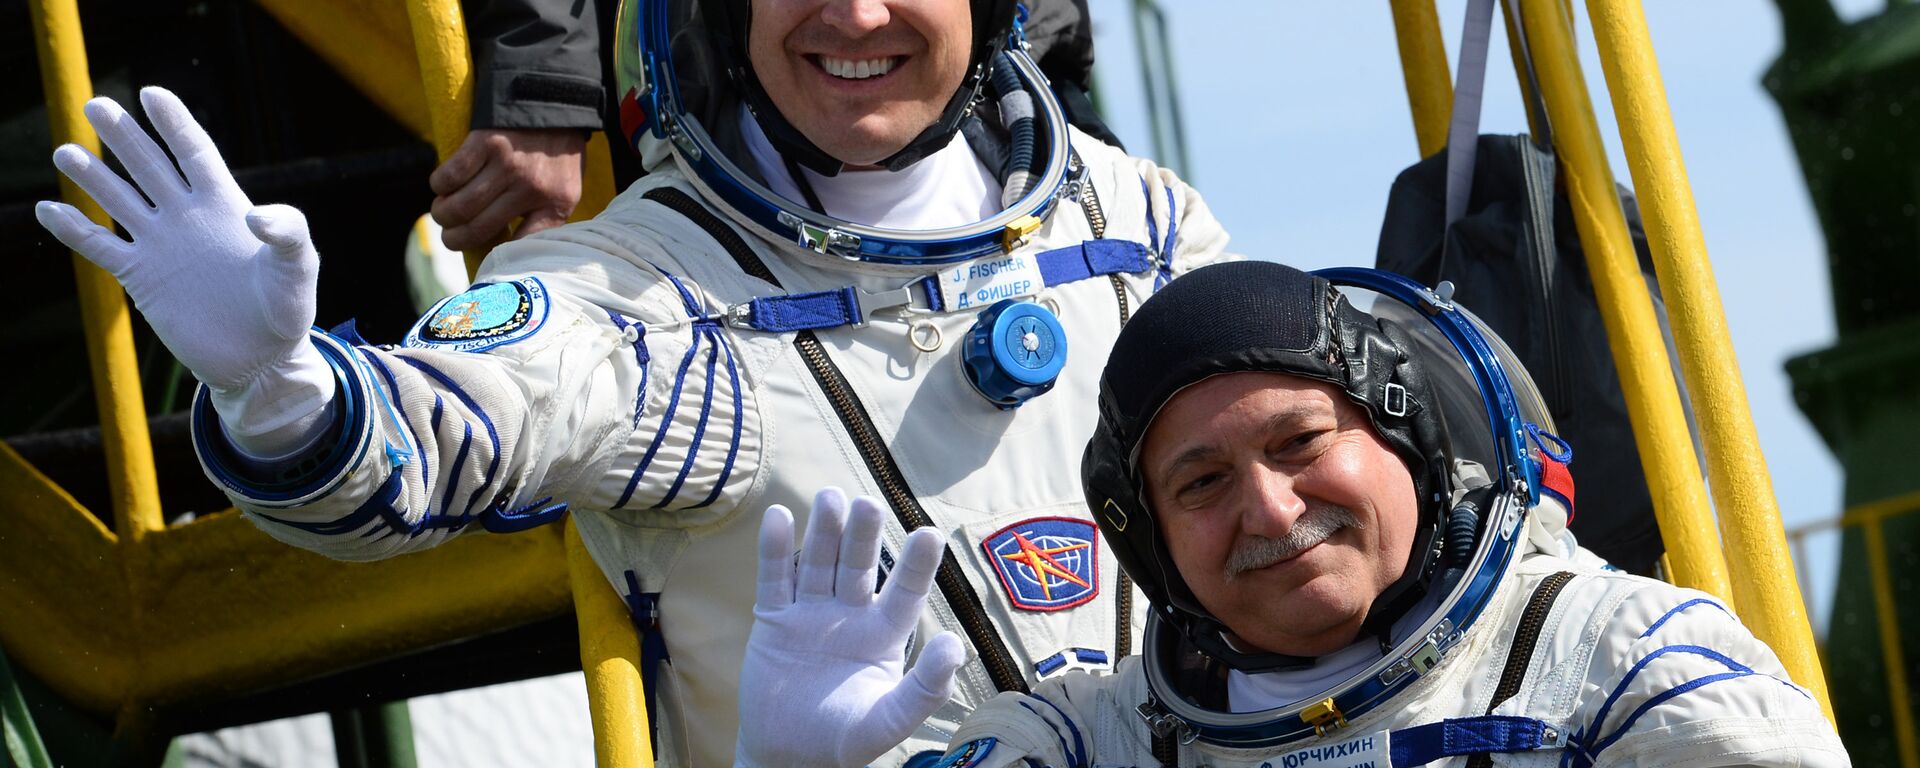 Jack Fischer, astronauta de la NASA, y Fiodor Yurchijin, cosmonauta de Roscosmos, antes de partir en la misión Soyuz-FG, Baikonur, 20 de abril de 2017 - Sputnik Mundo, 1920, 12.04.2021